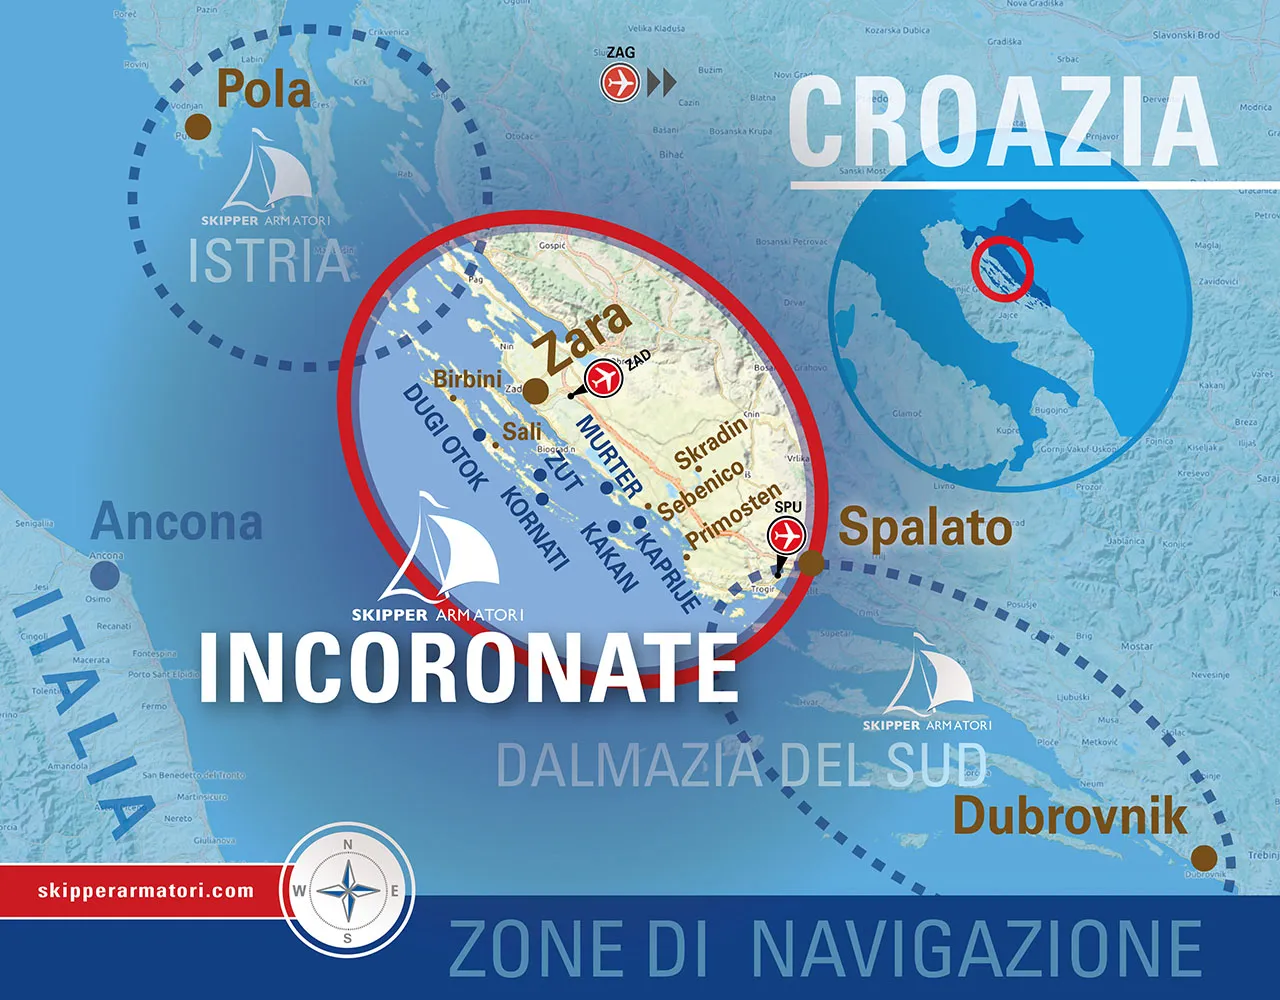 Mappa di navigazione di Skipper Armatori, delineando le zone di navigazione in Croazia, con focus sulle Isole Incoronate e evidenziando le principali città come Zara e Dubrovnik, nonché le rotte di vela da Pola a Spalato.